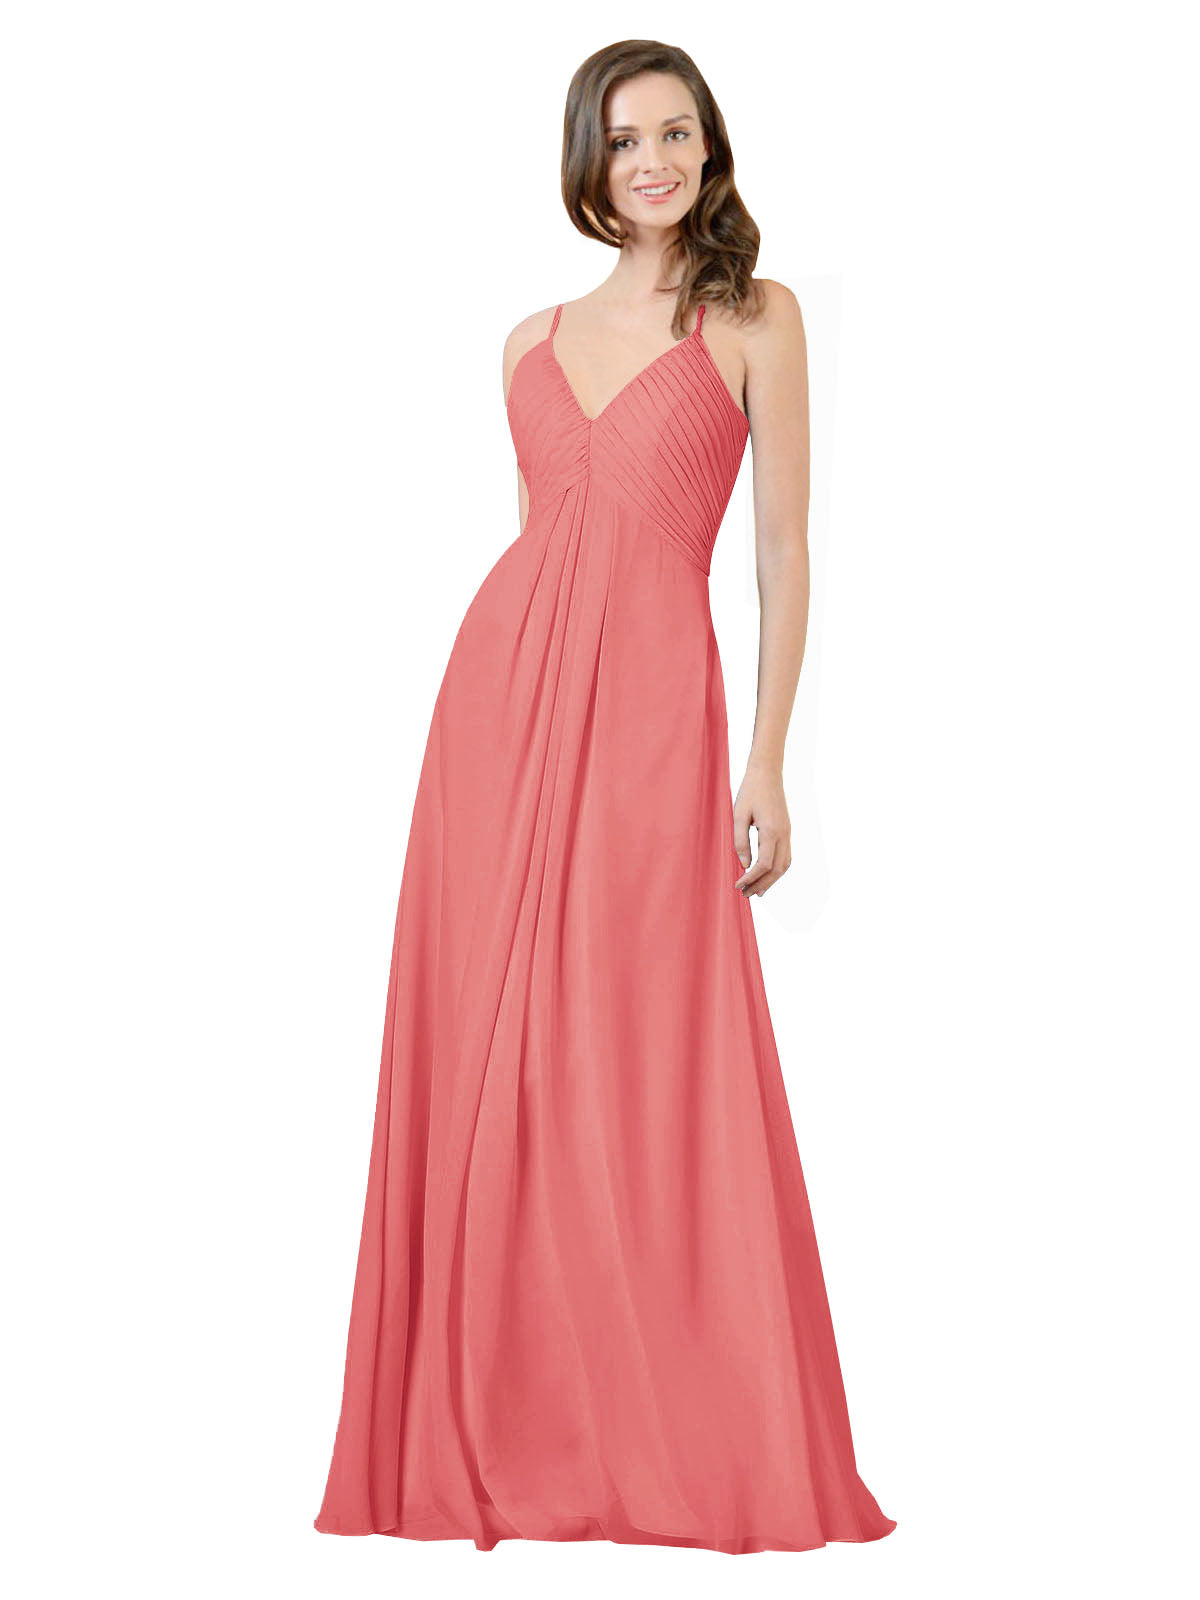 Desert Rose A-Line V-Neck Spaghetti Straps Sleeveless Long Bridesmaid Dress Kari